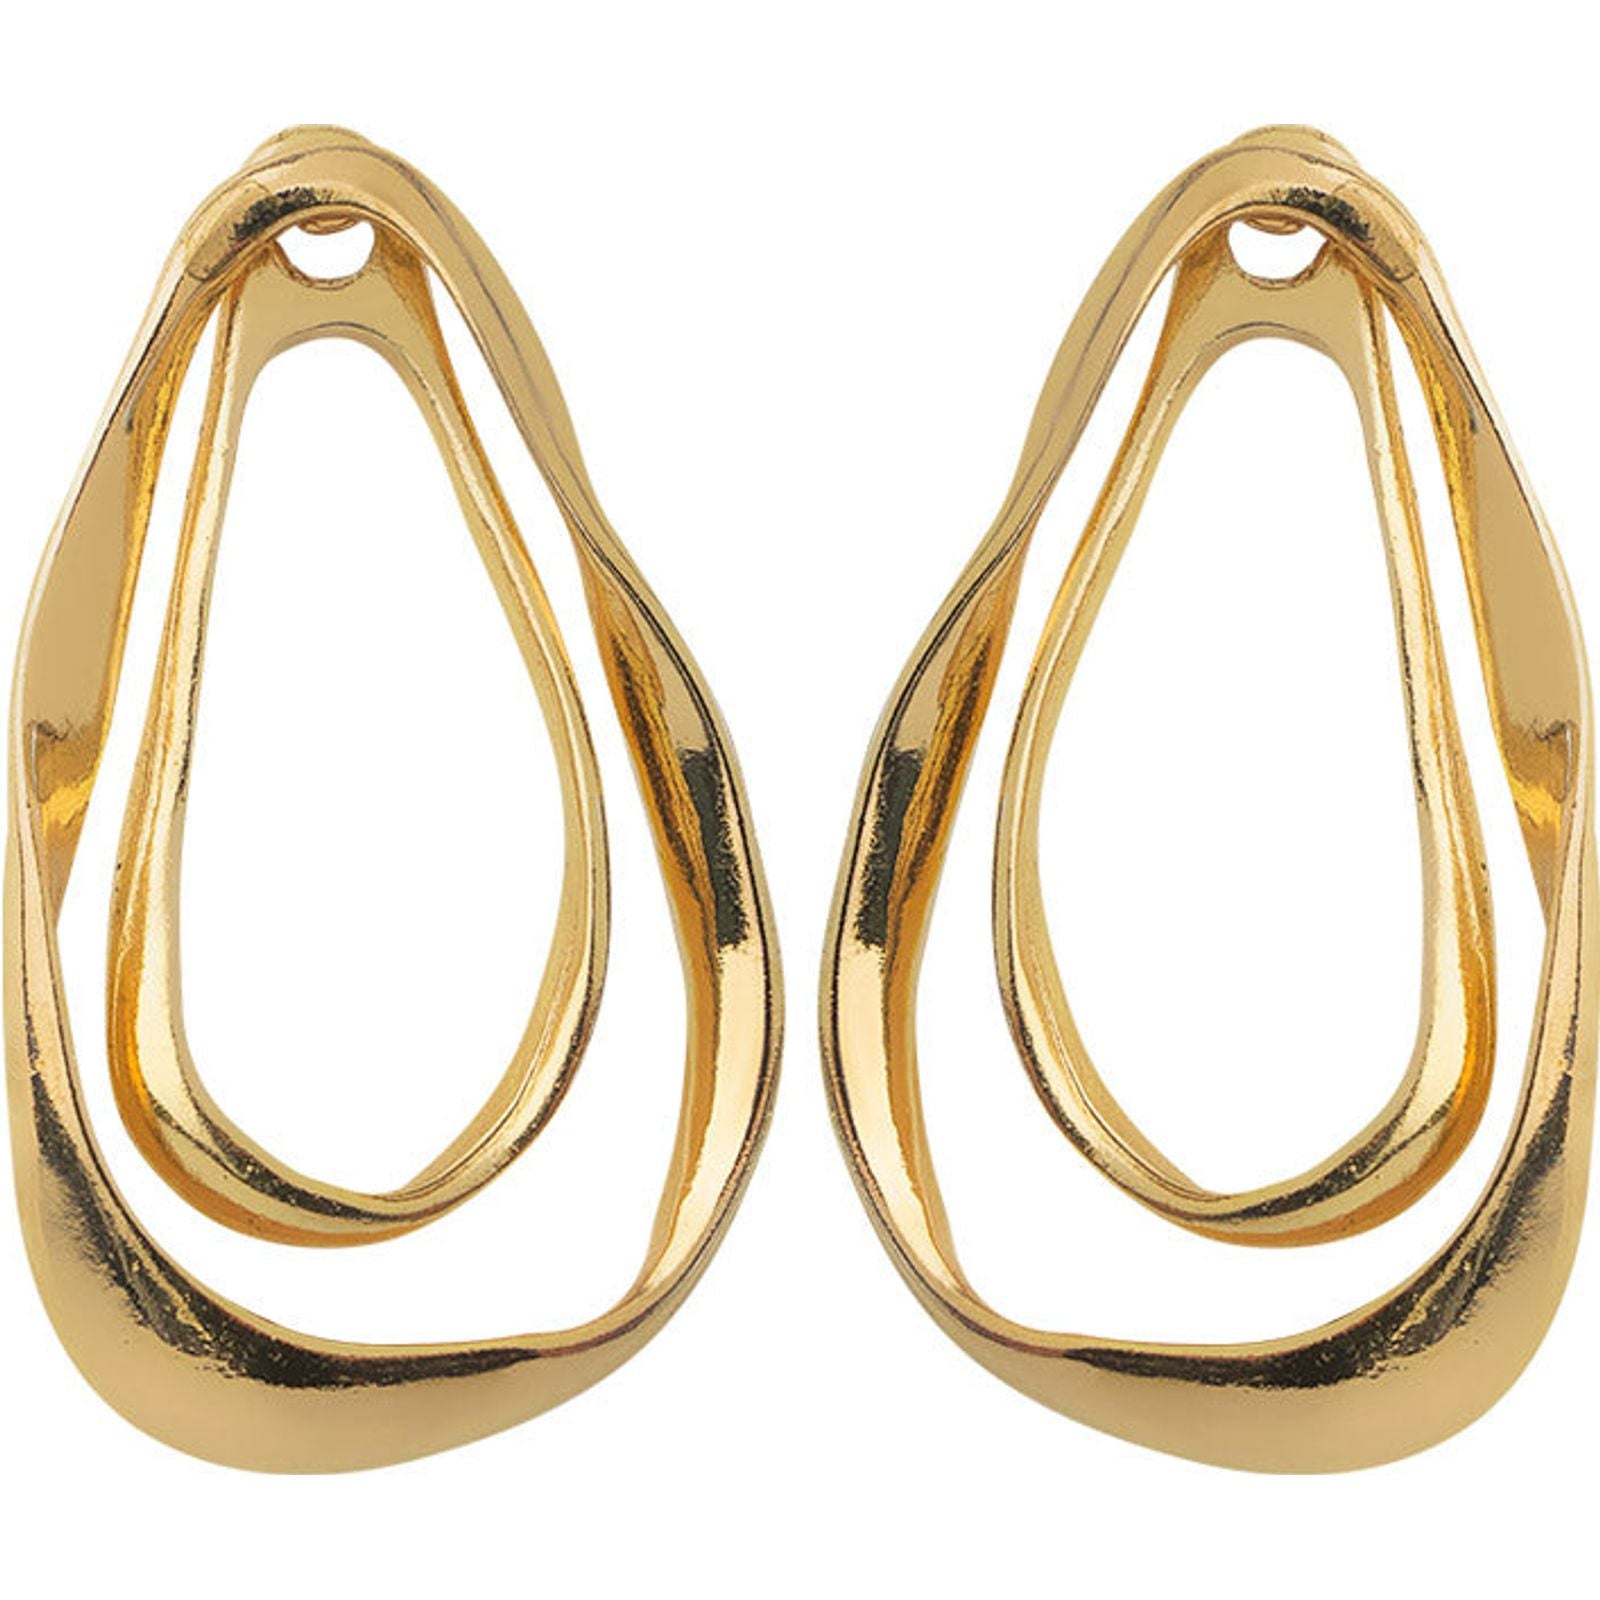 Earrings Dorados Ovalados Dobles